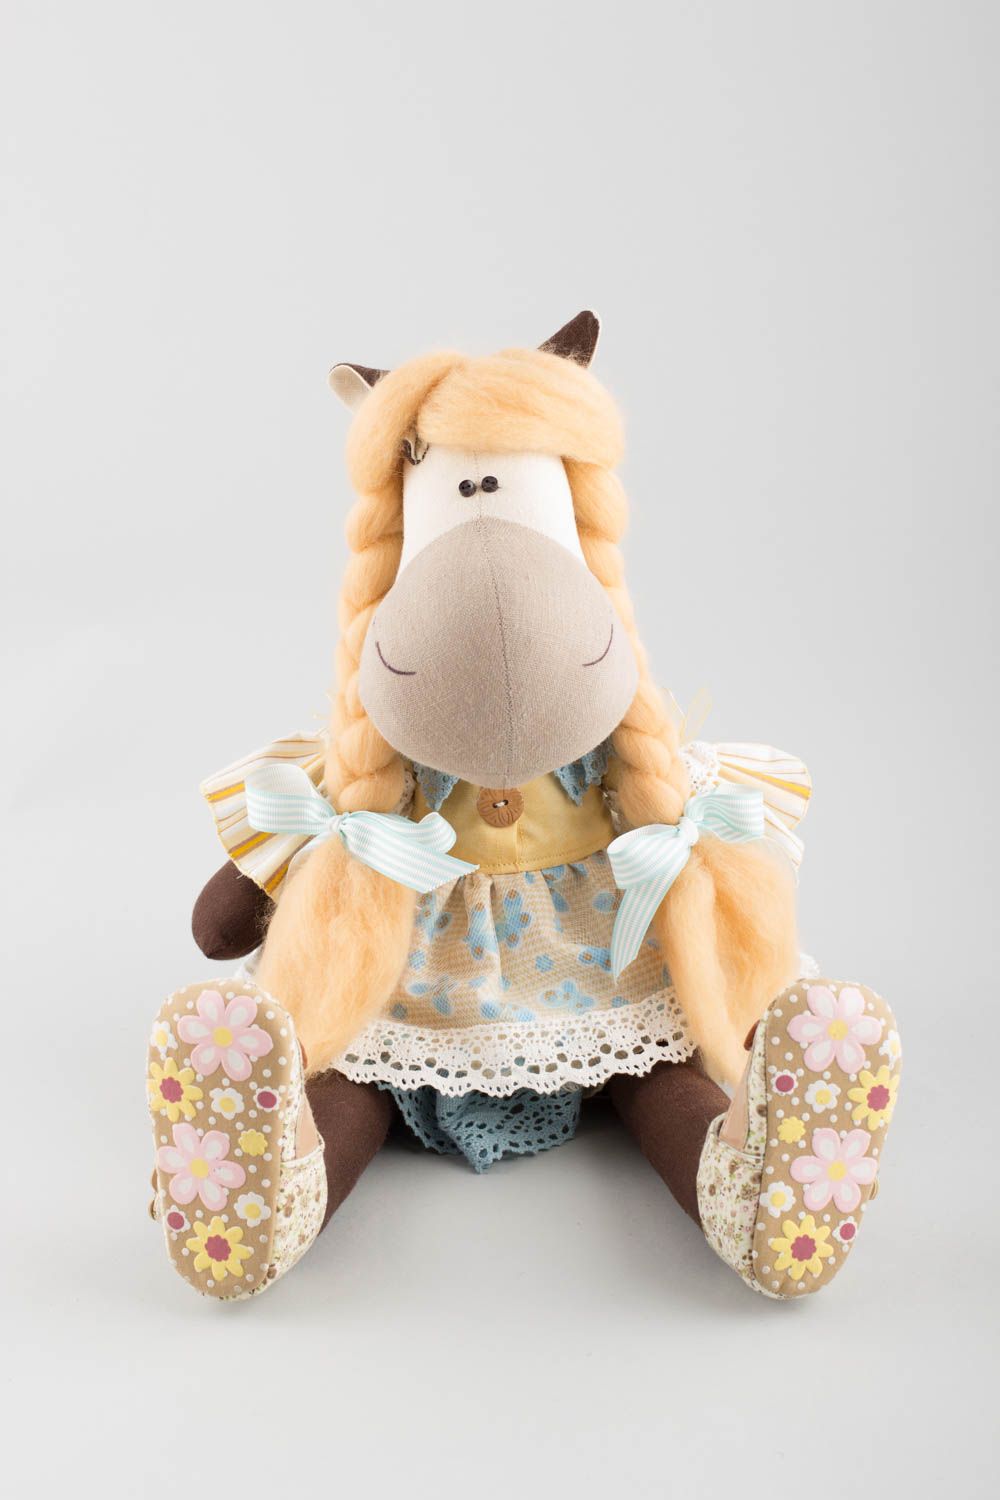 Handmade Stofftier Pferd in Kleidung aus Leinen und Baumwolle für Kind und Dekor foto 4